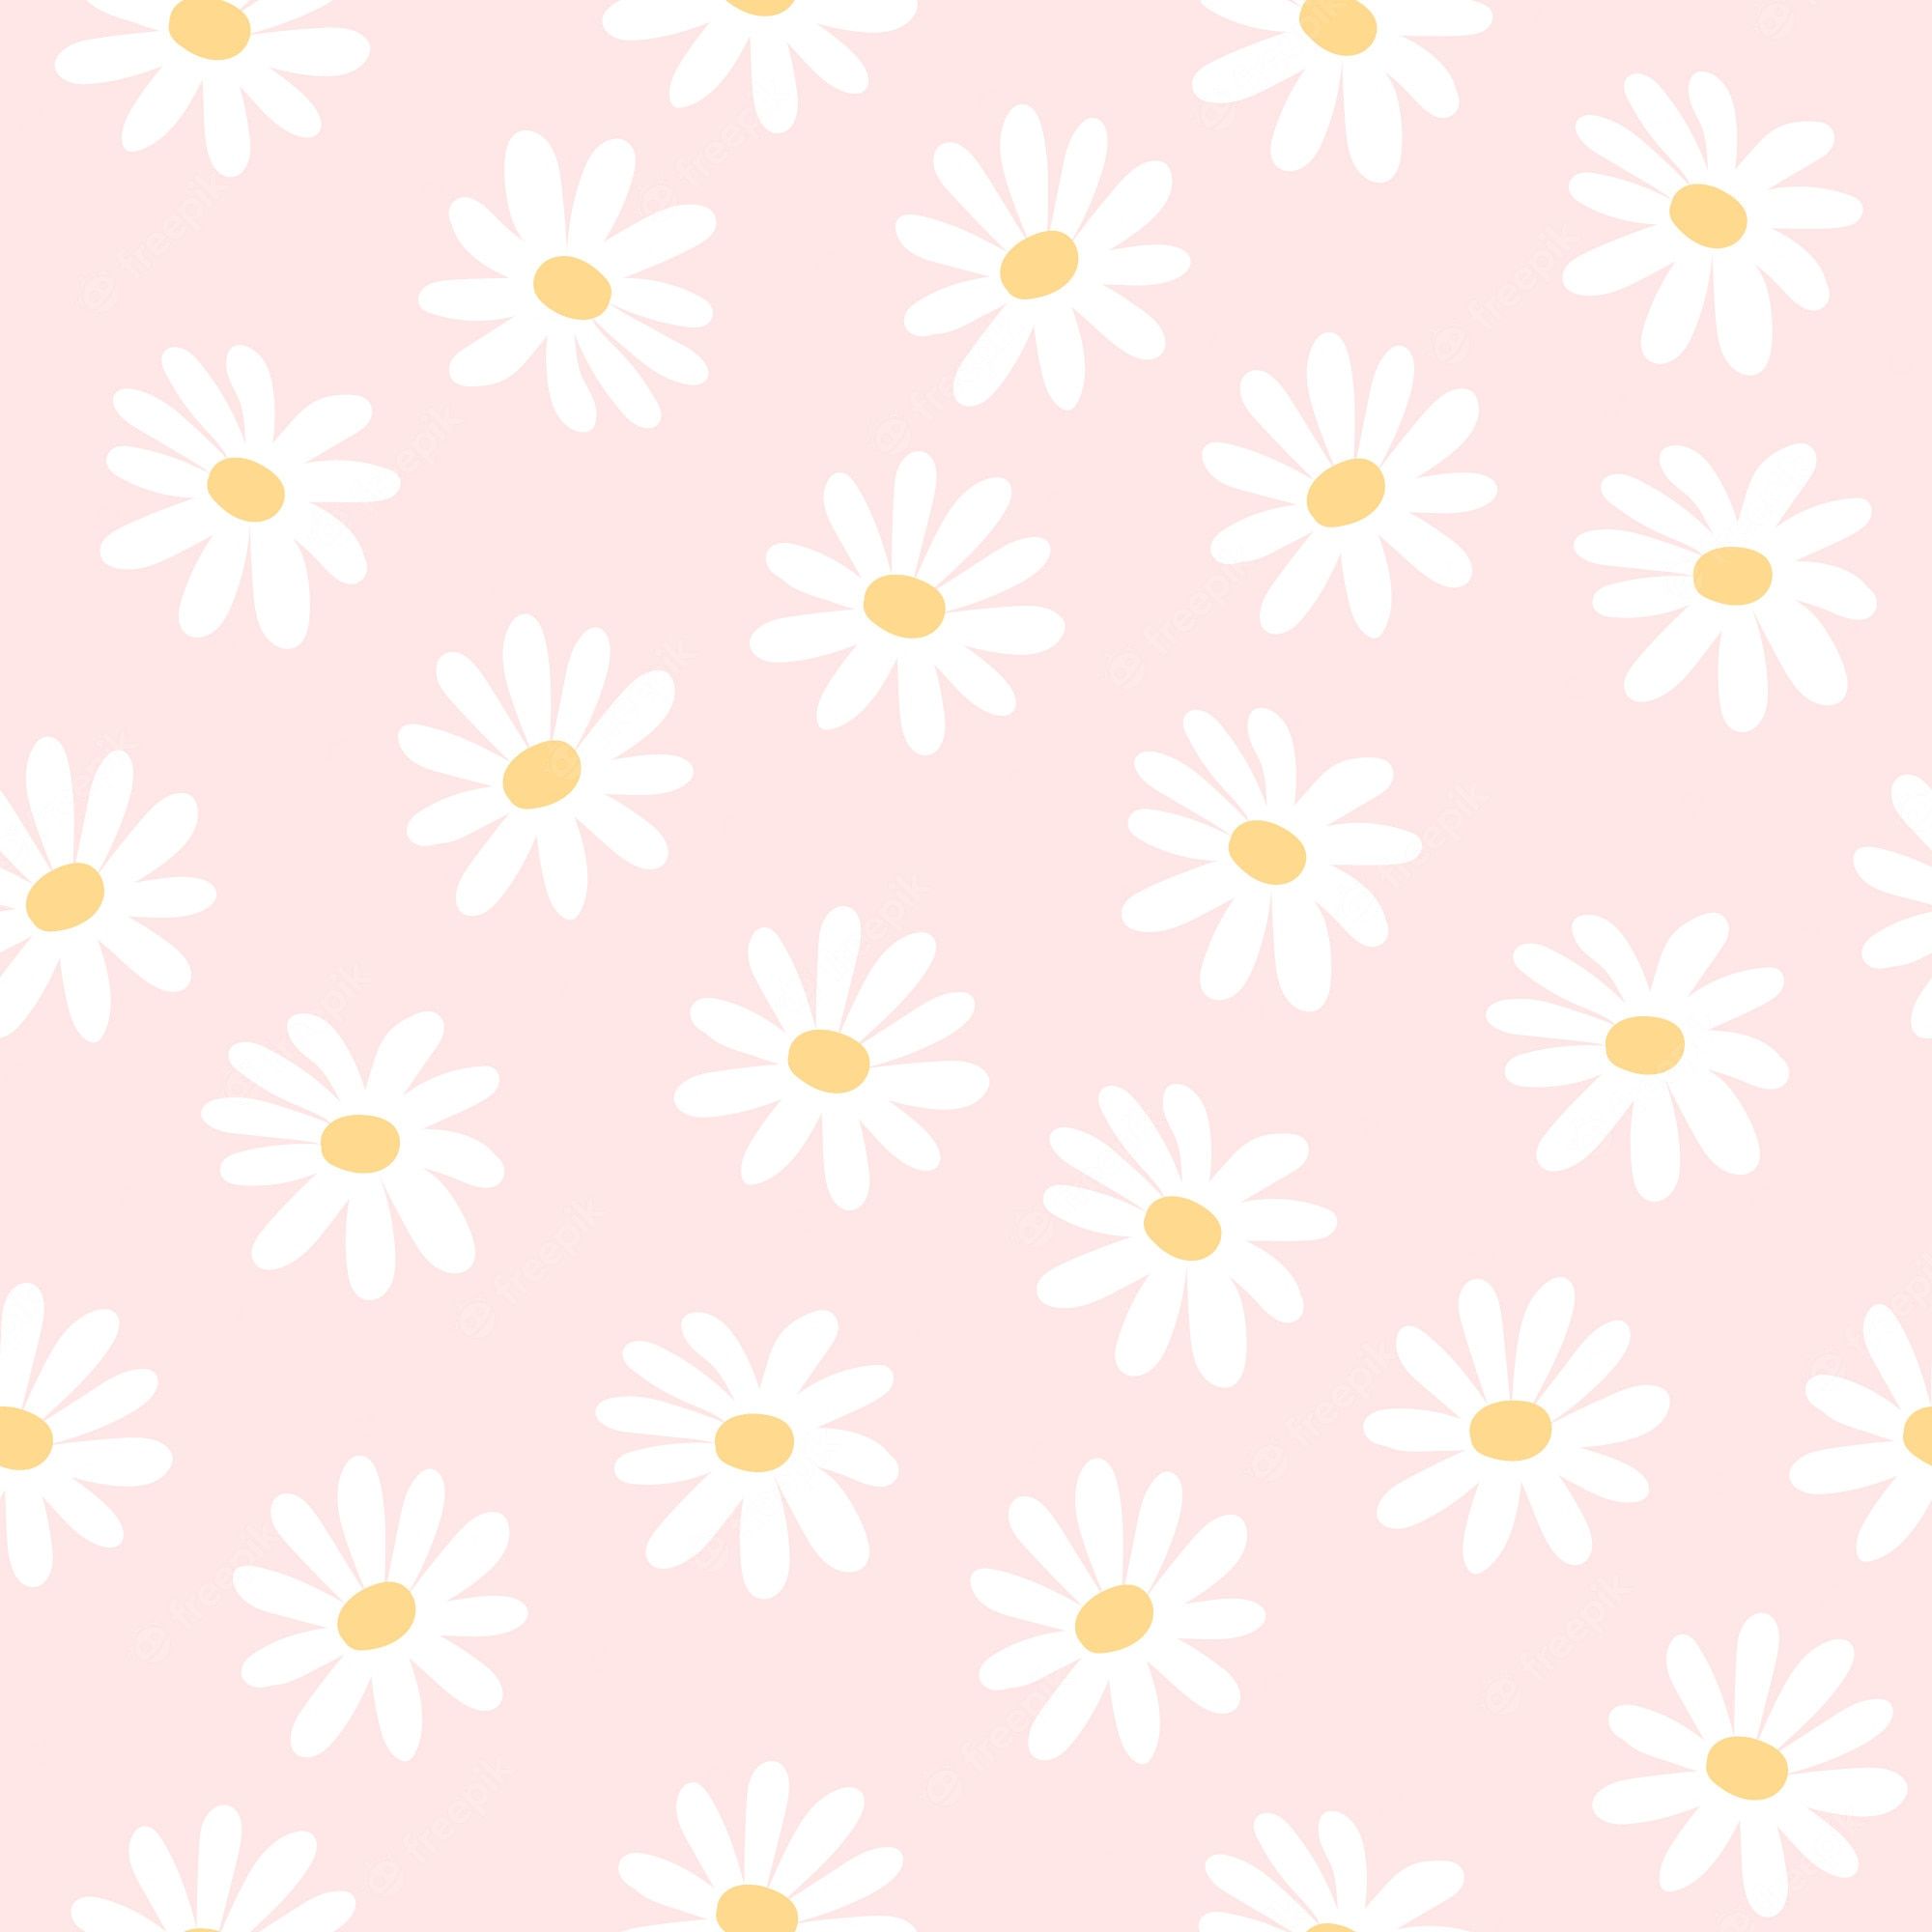 Daisy Background Image